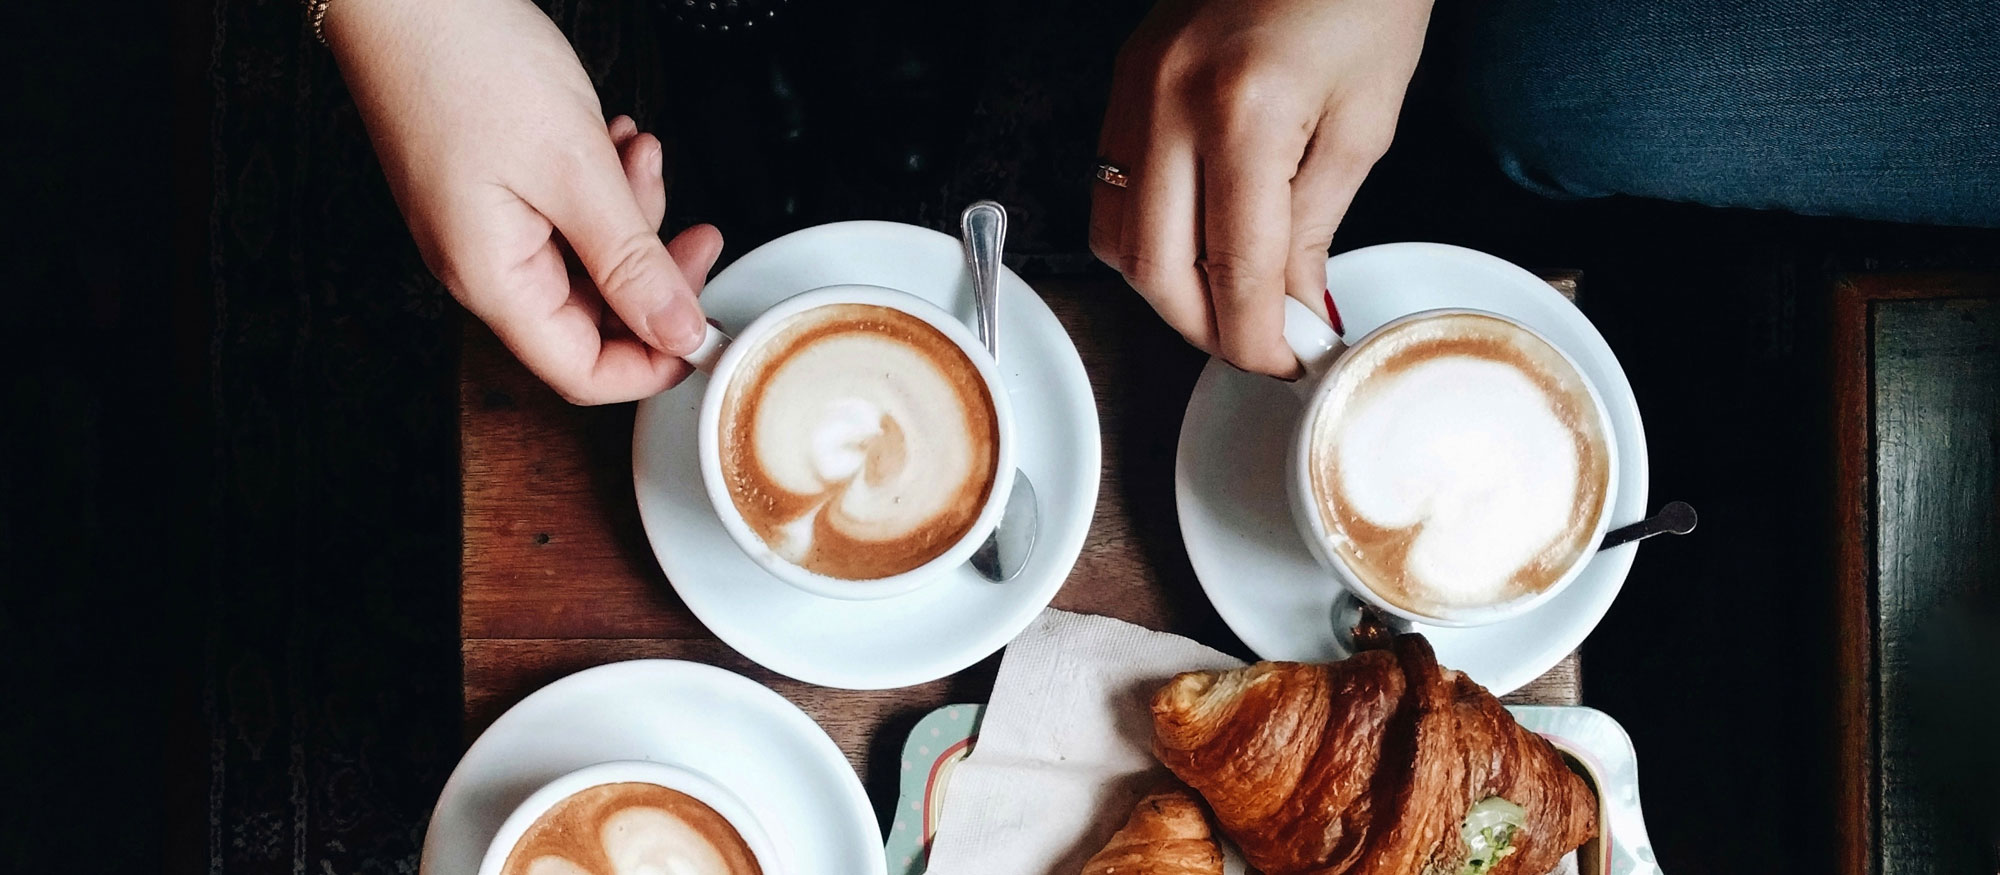 Tre personer sitter på ett café och fikar fikar kaffe latte och croissanter